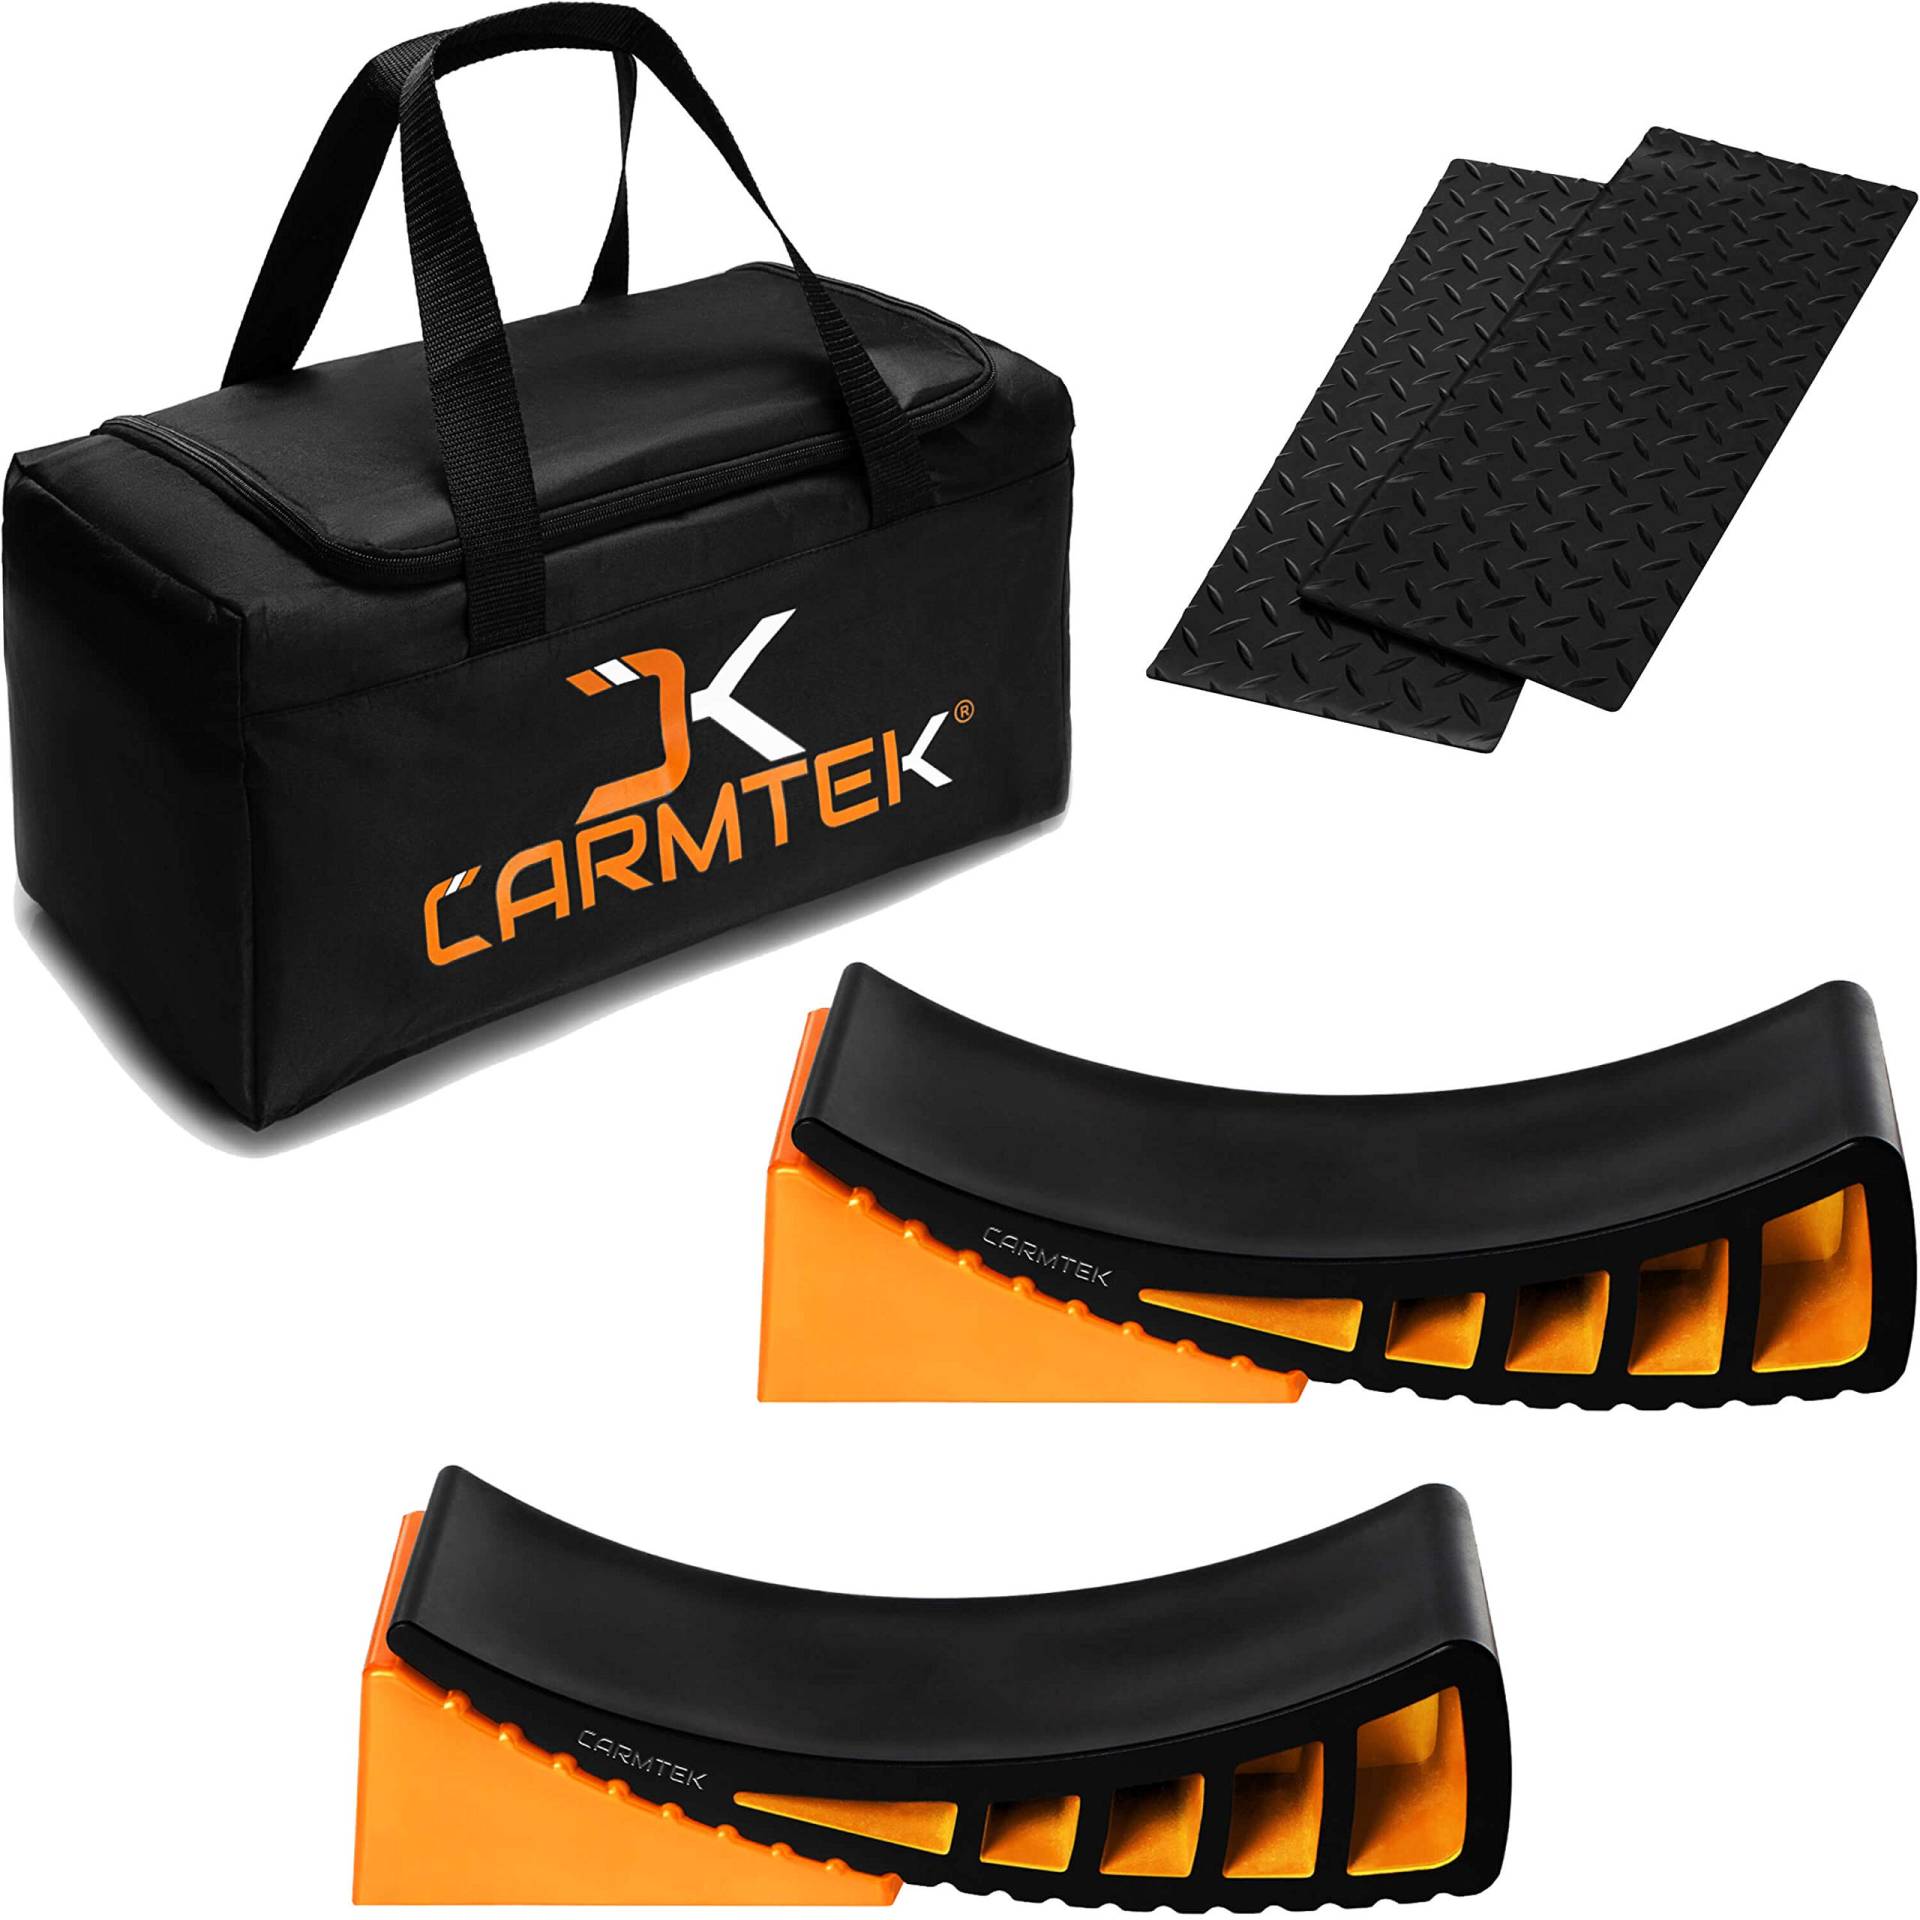 CARMTEK Camper Nivelliergerät Premium-Set – Gebogene RV-Nivellierer mit Unterlegkeilen, Gummimatten und Tragetasche, schnellere Nivellierung als RV-Nivellierblöcke. von CARMTEK